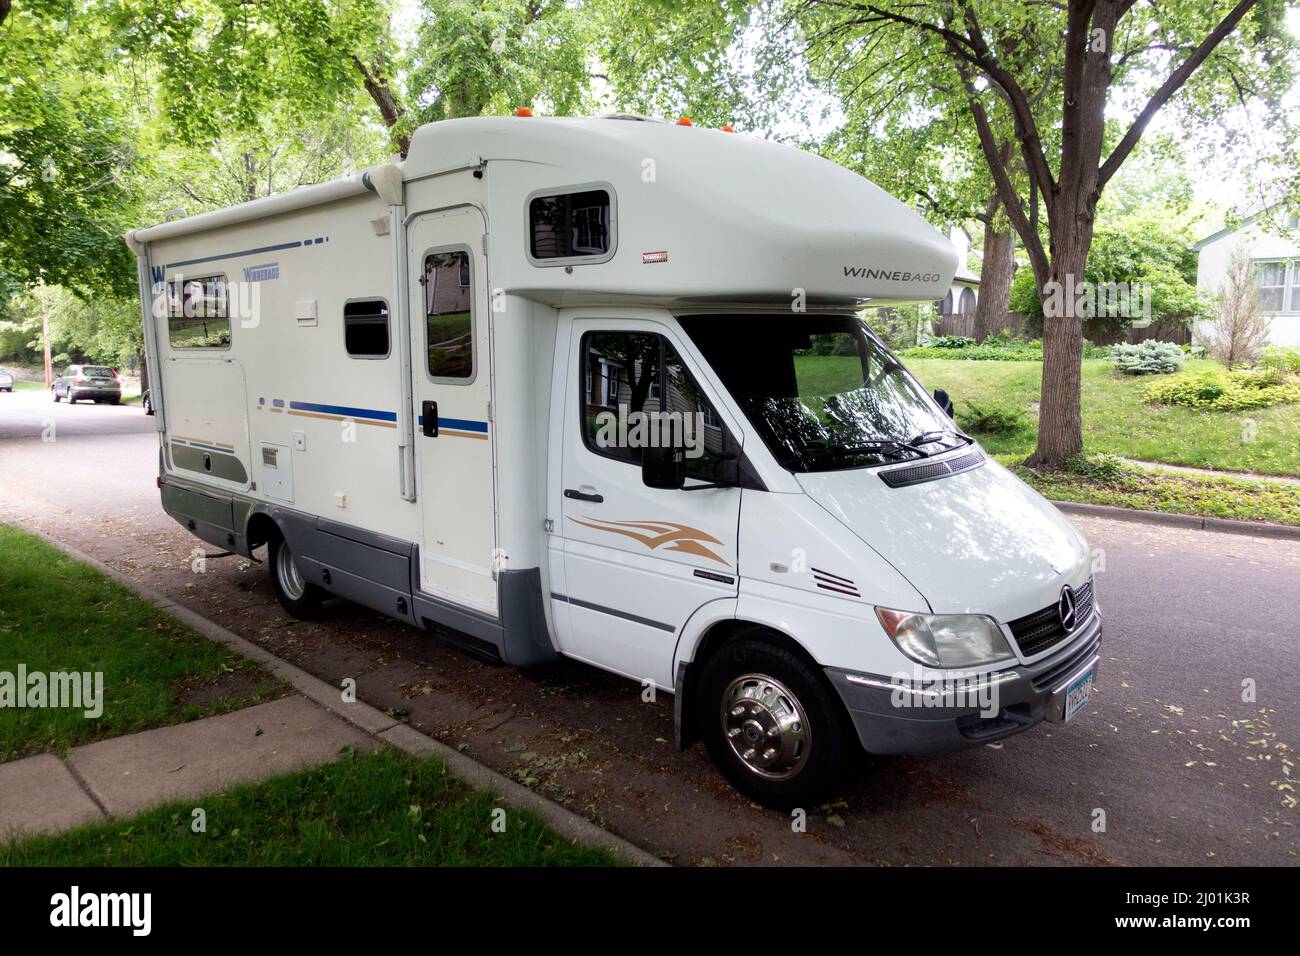 Elegante Winnebago Trailer de viaje estacionado en una calle de barrio que busca explorar nuevos lugares. St Paul Minnesota MN EE.UU Foto de stock